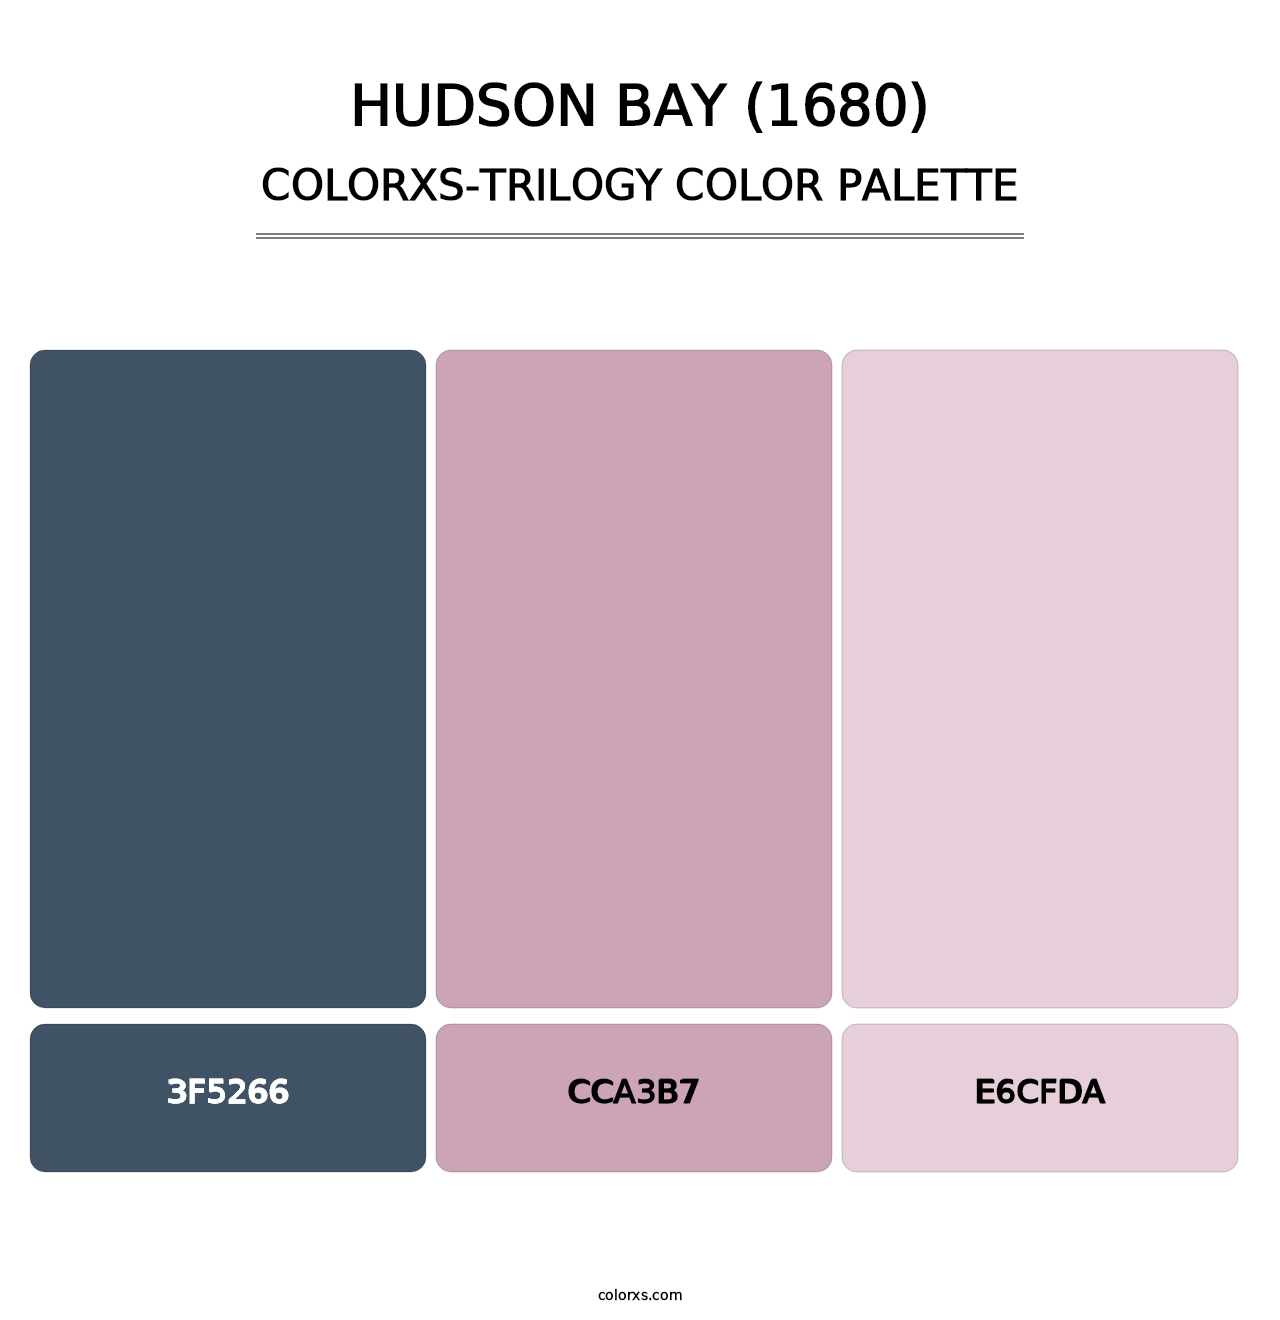 Hudson Bay (1680) - Colorxs Trilogy Palette